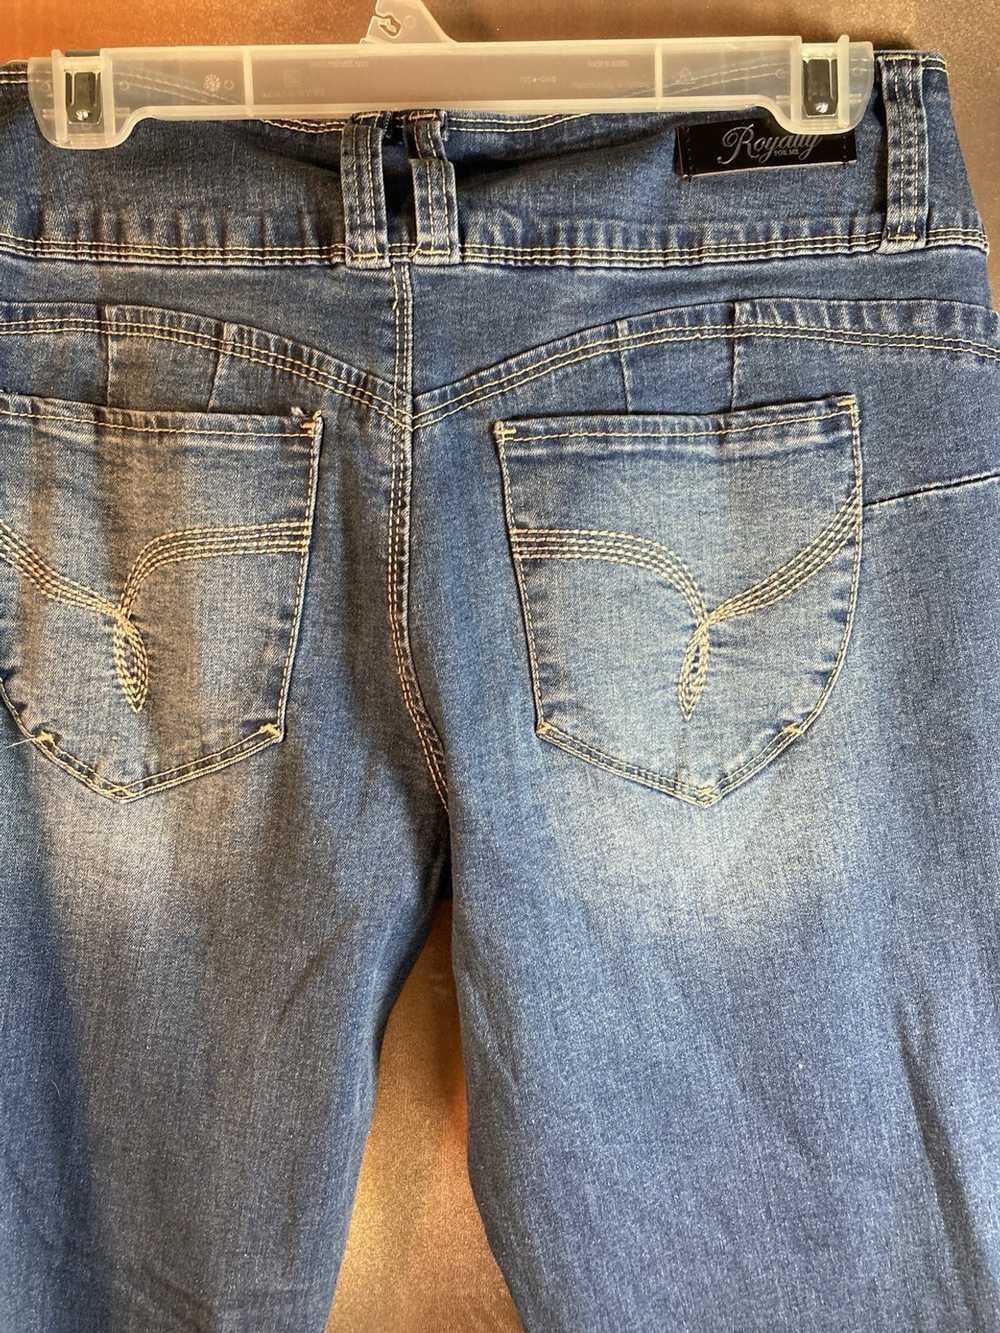 Designer Royalty jeans “wannabettabutt?” Size 8 3… - image 4